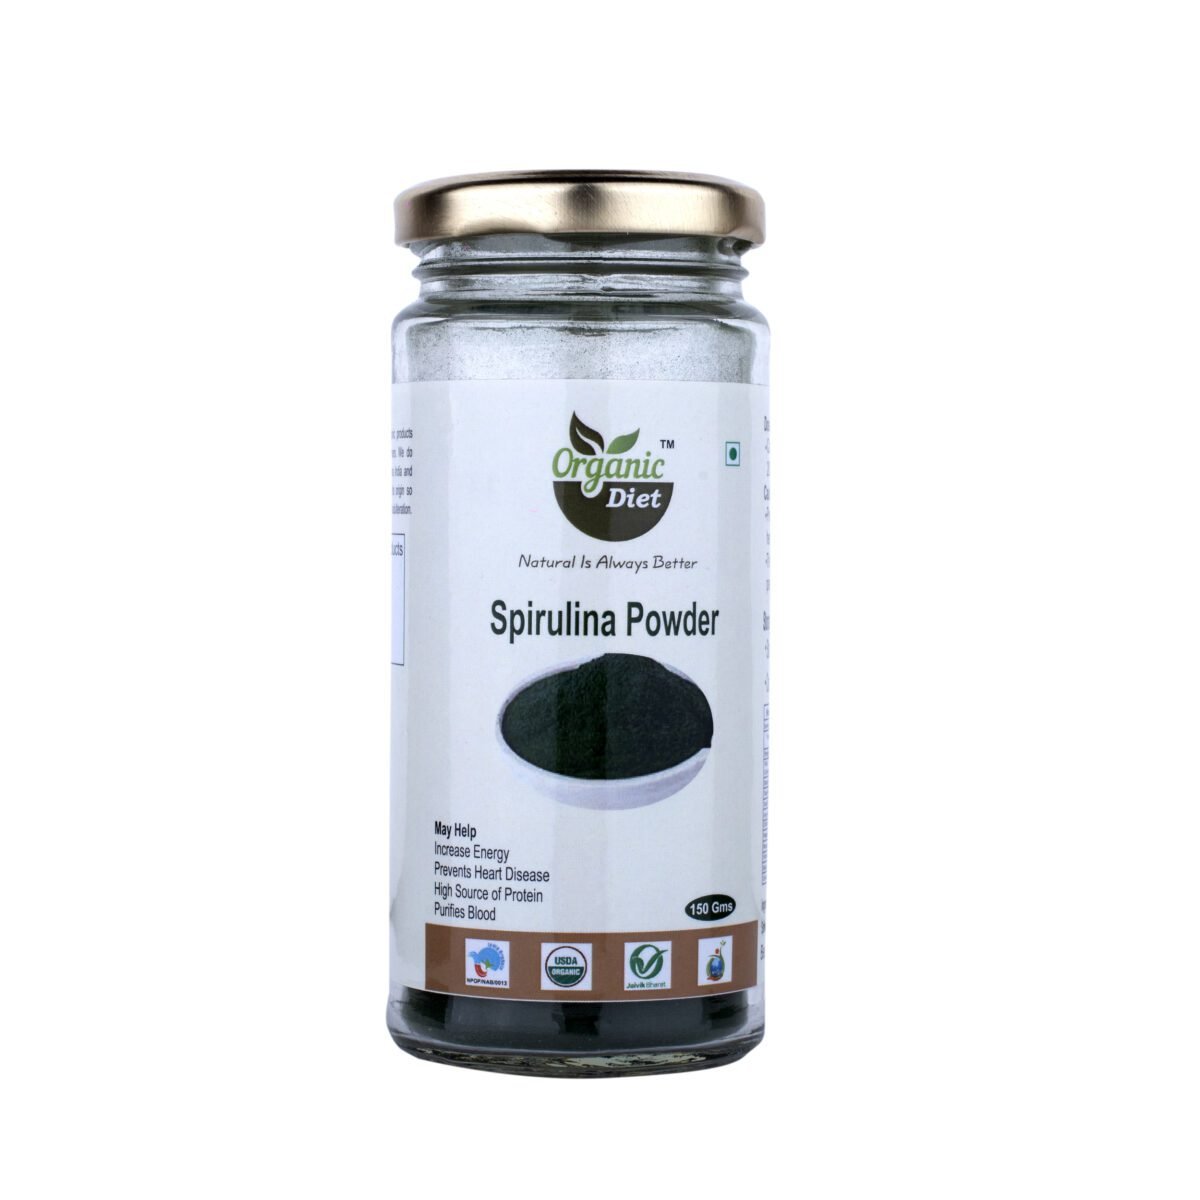 spirulina powder-front -organic diet